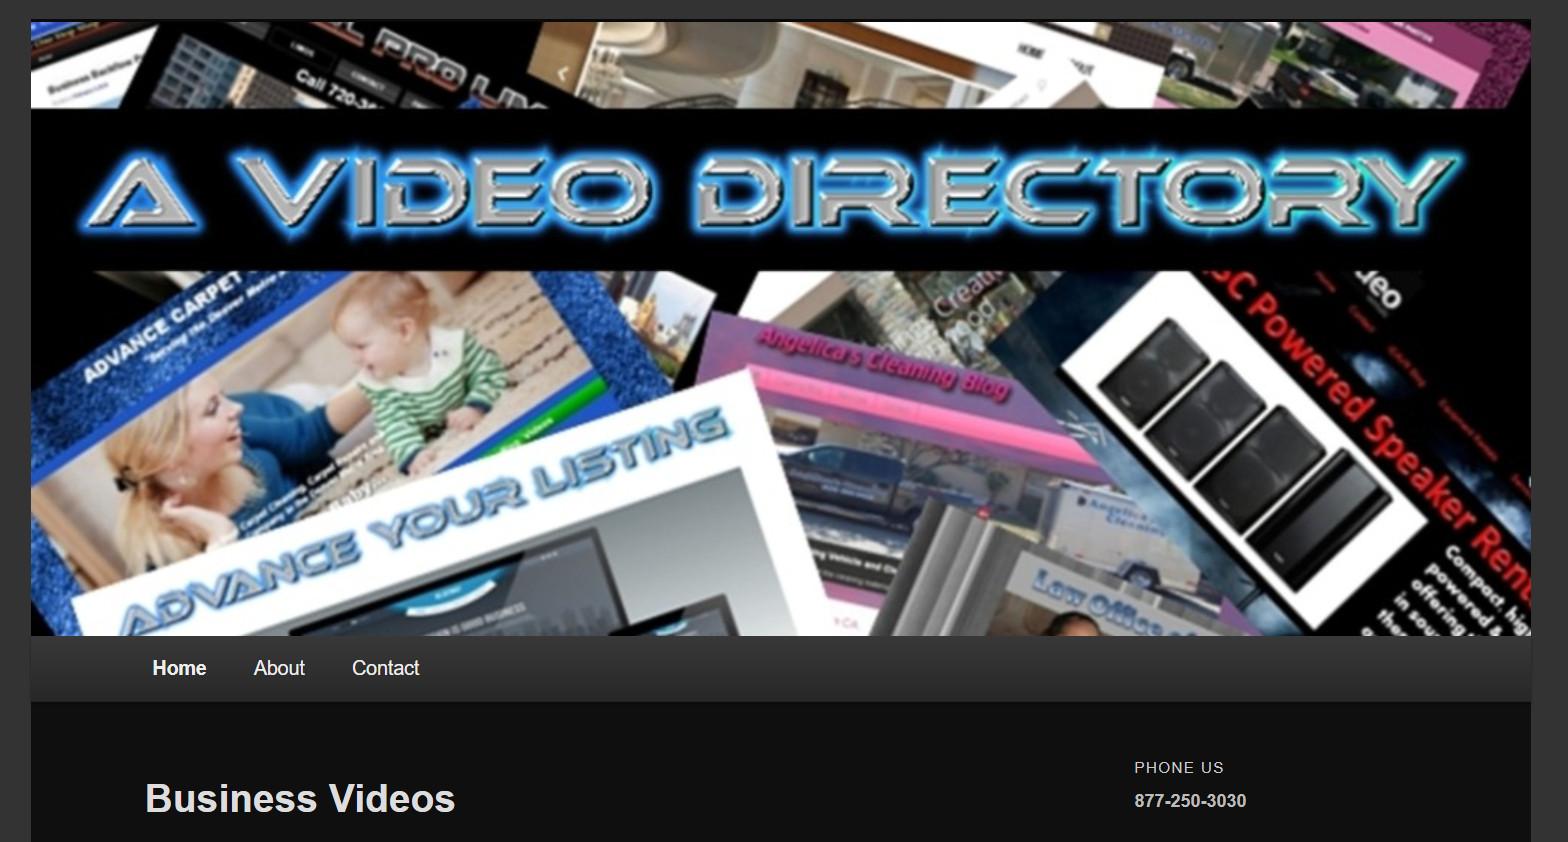 A Video Directory COM